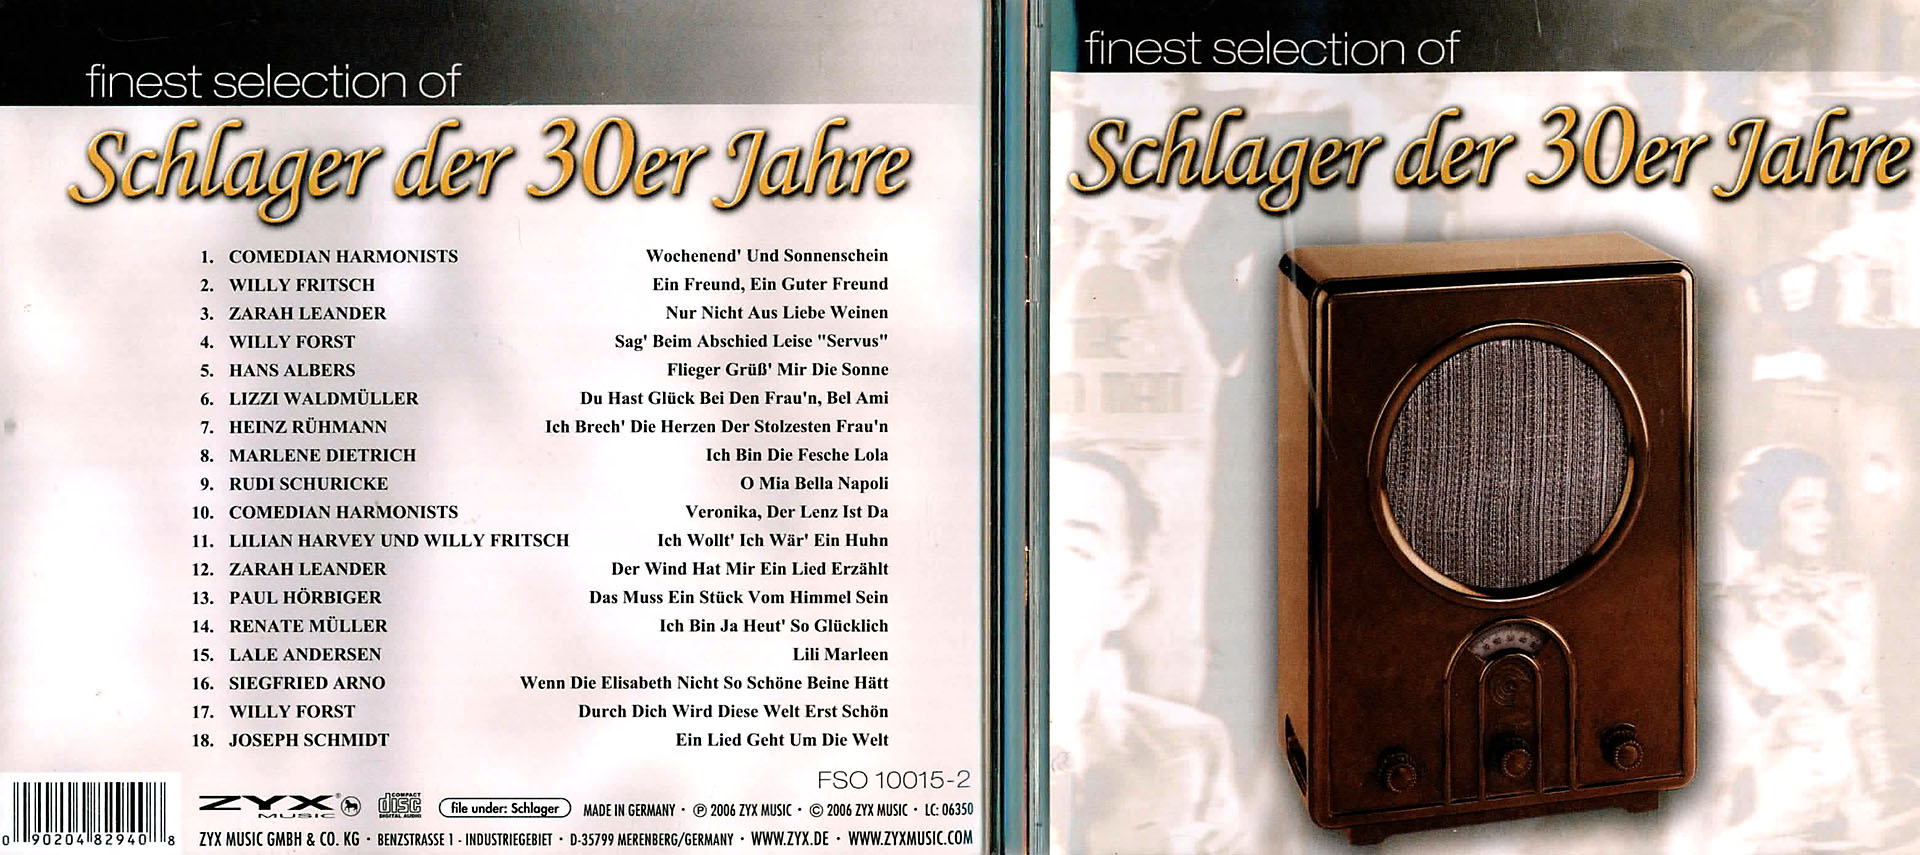 Finest Selection Of Schlager der 30er Jahre - Comedian Harmonists / Willy Fritsch / Zarah Leander / Willy Forst u.v.a.m